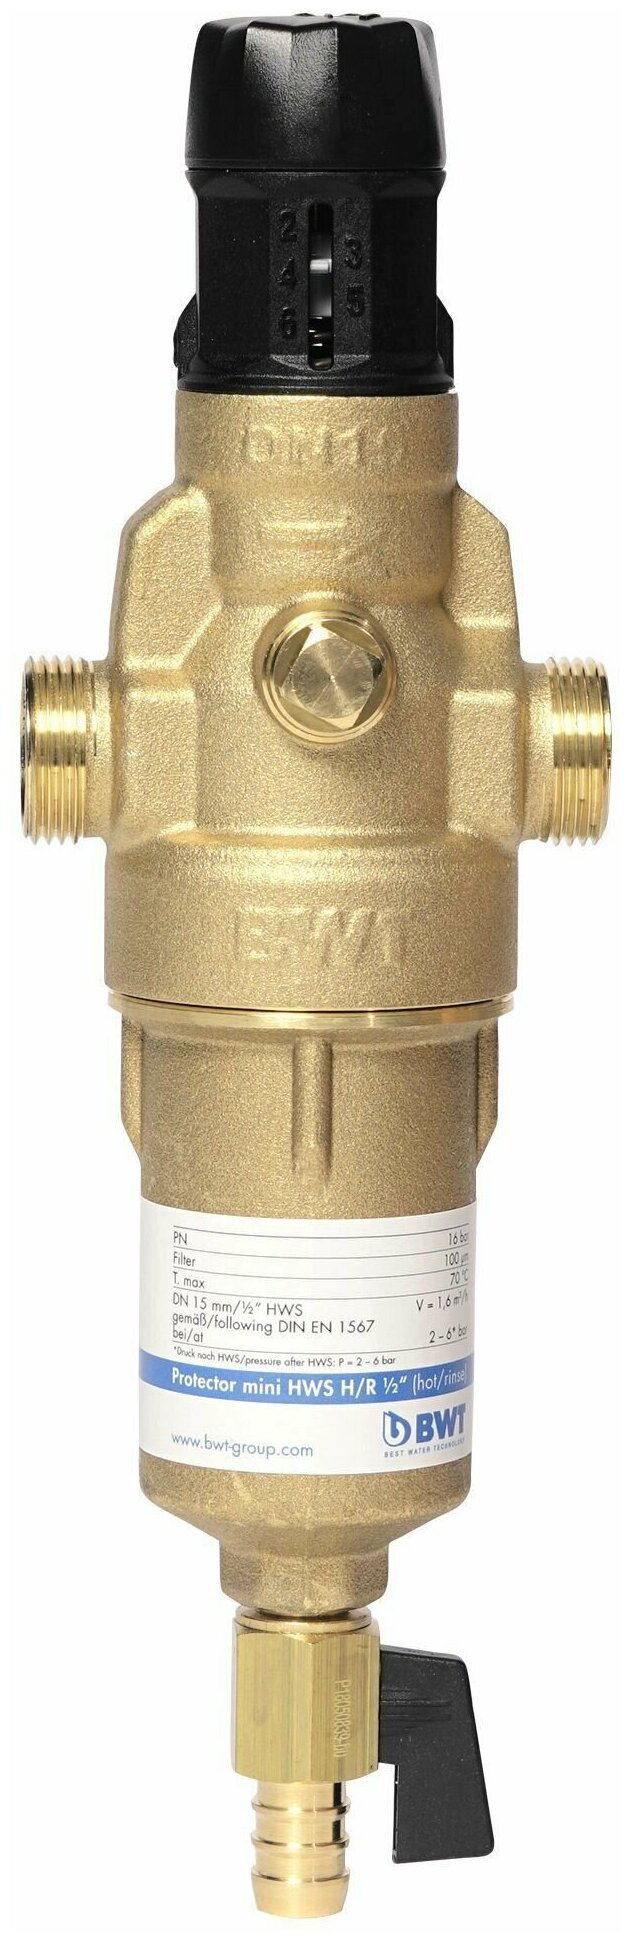 Фильтр для горячей воды Protector mini H/R 3/4" HWS (прямая промывка, редуктор давления), BWT 810563